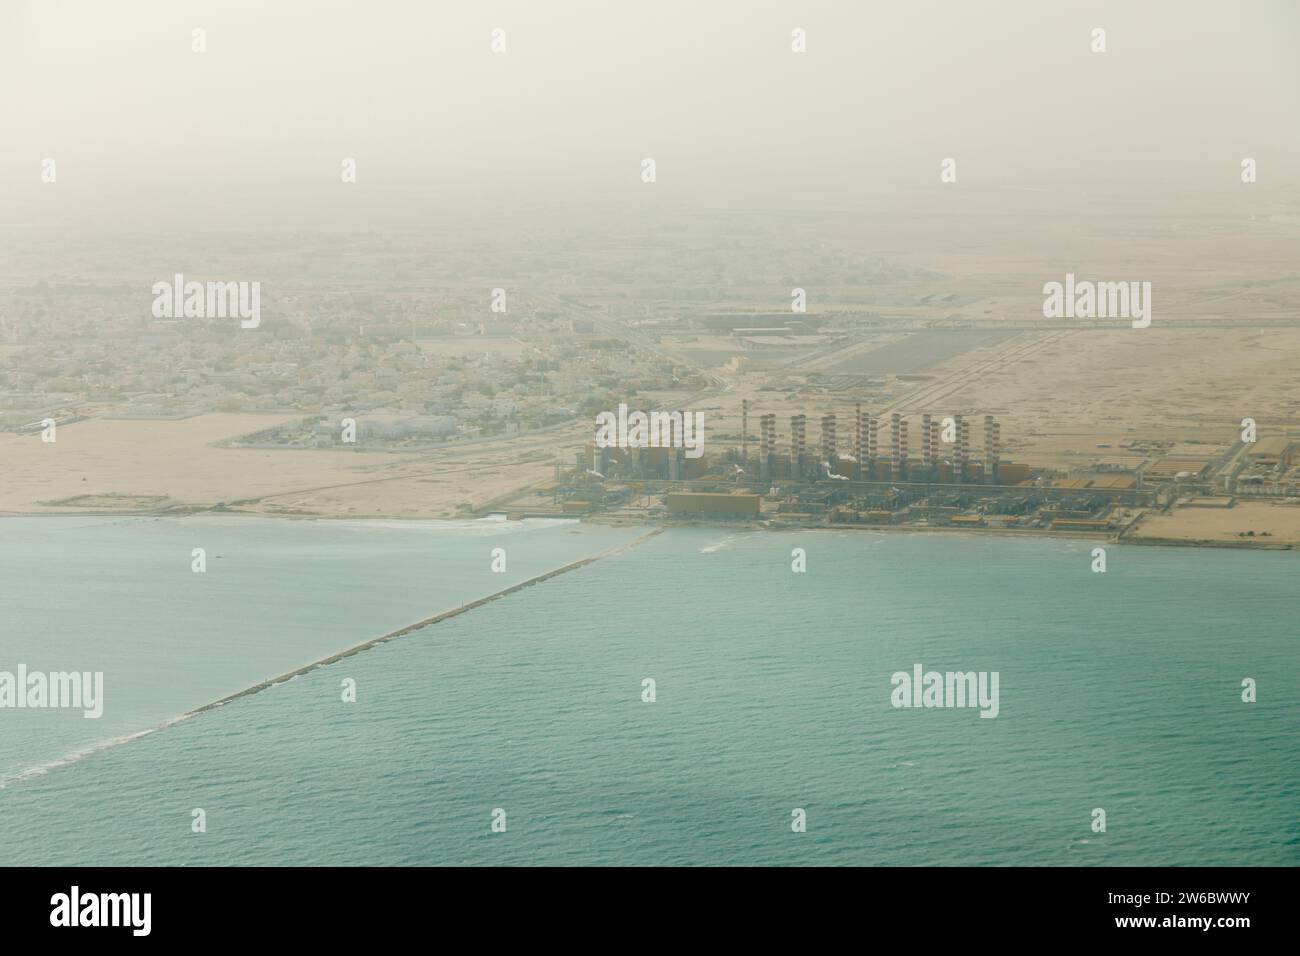 Vista aérea de una refinería de gas natural líquido y una planta de energía en la costa de Doha, Qatar, en el Golfo Pérsico, vista desde arriba en un día lleno de humo Foto de stock